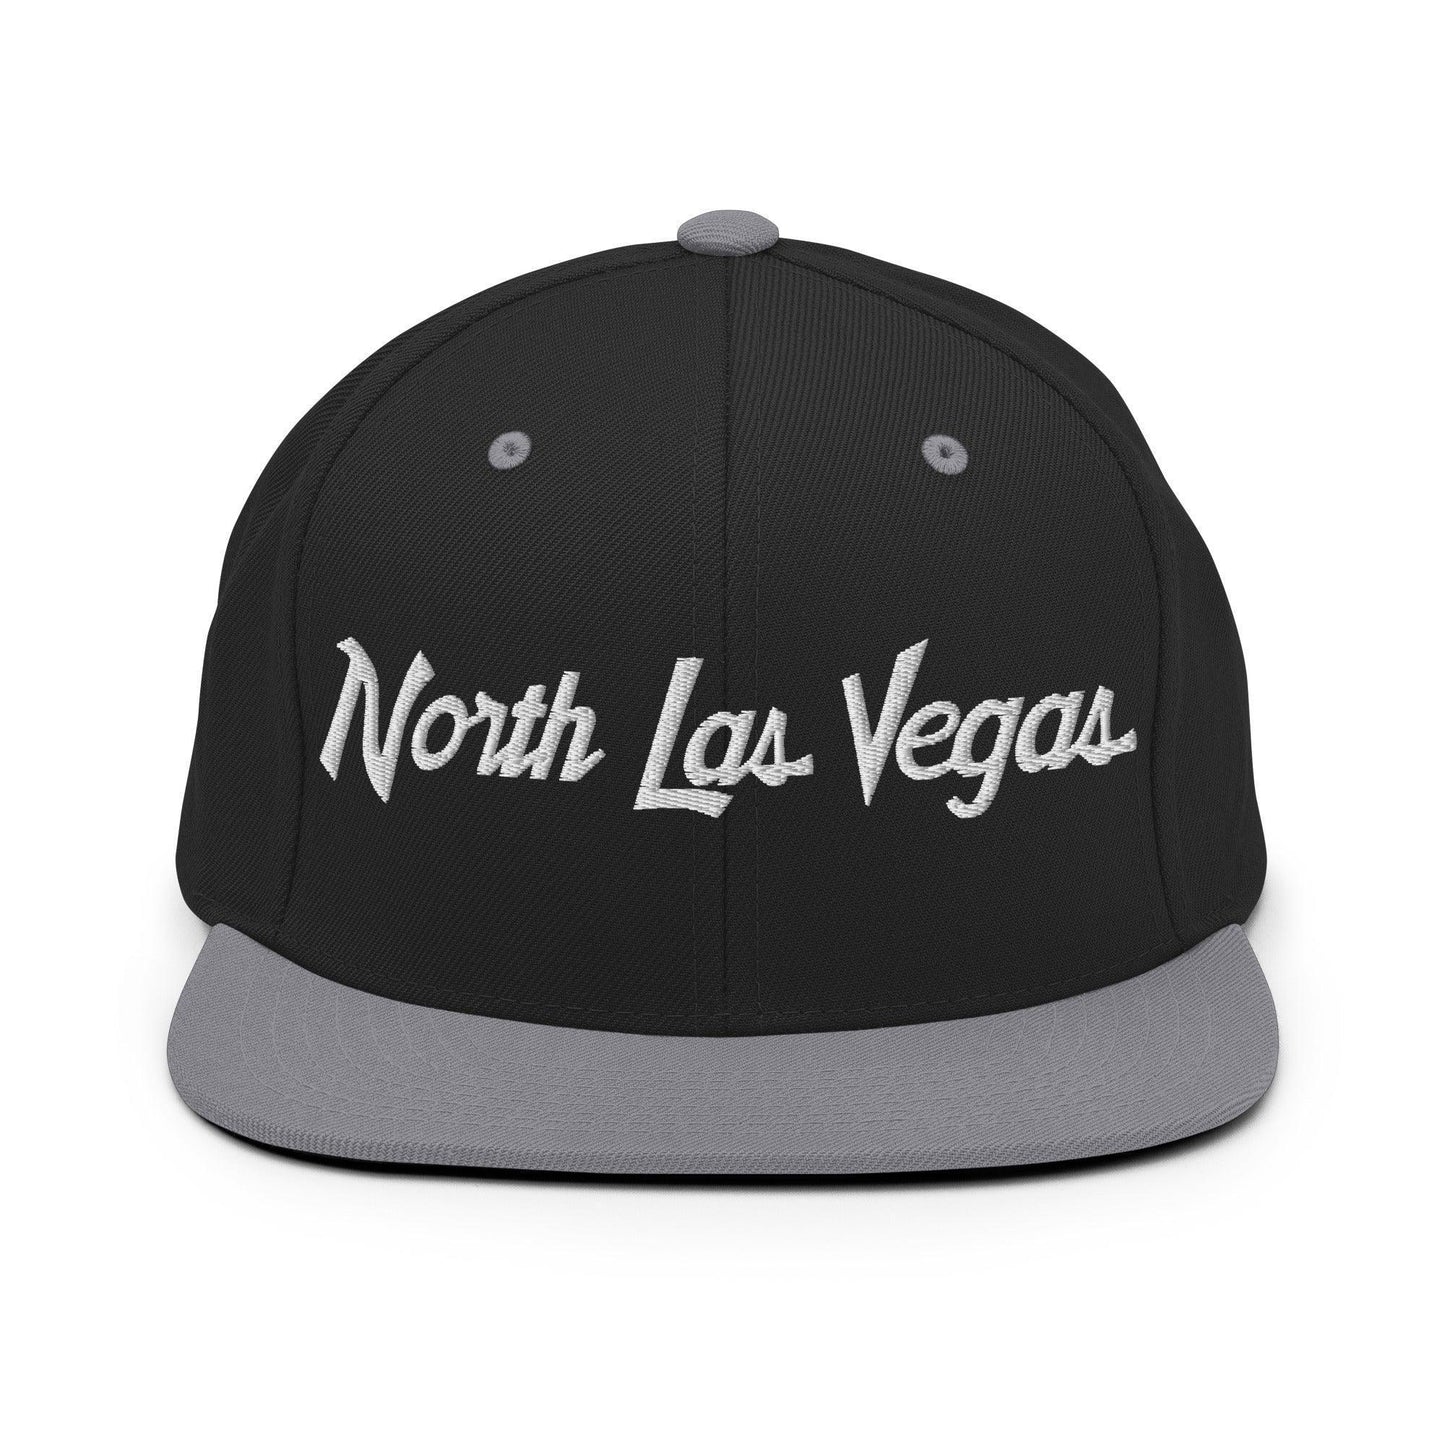 North Las Vegas Script Snapback Hat Black Silver